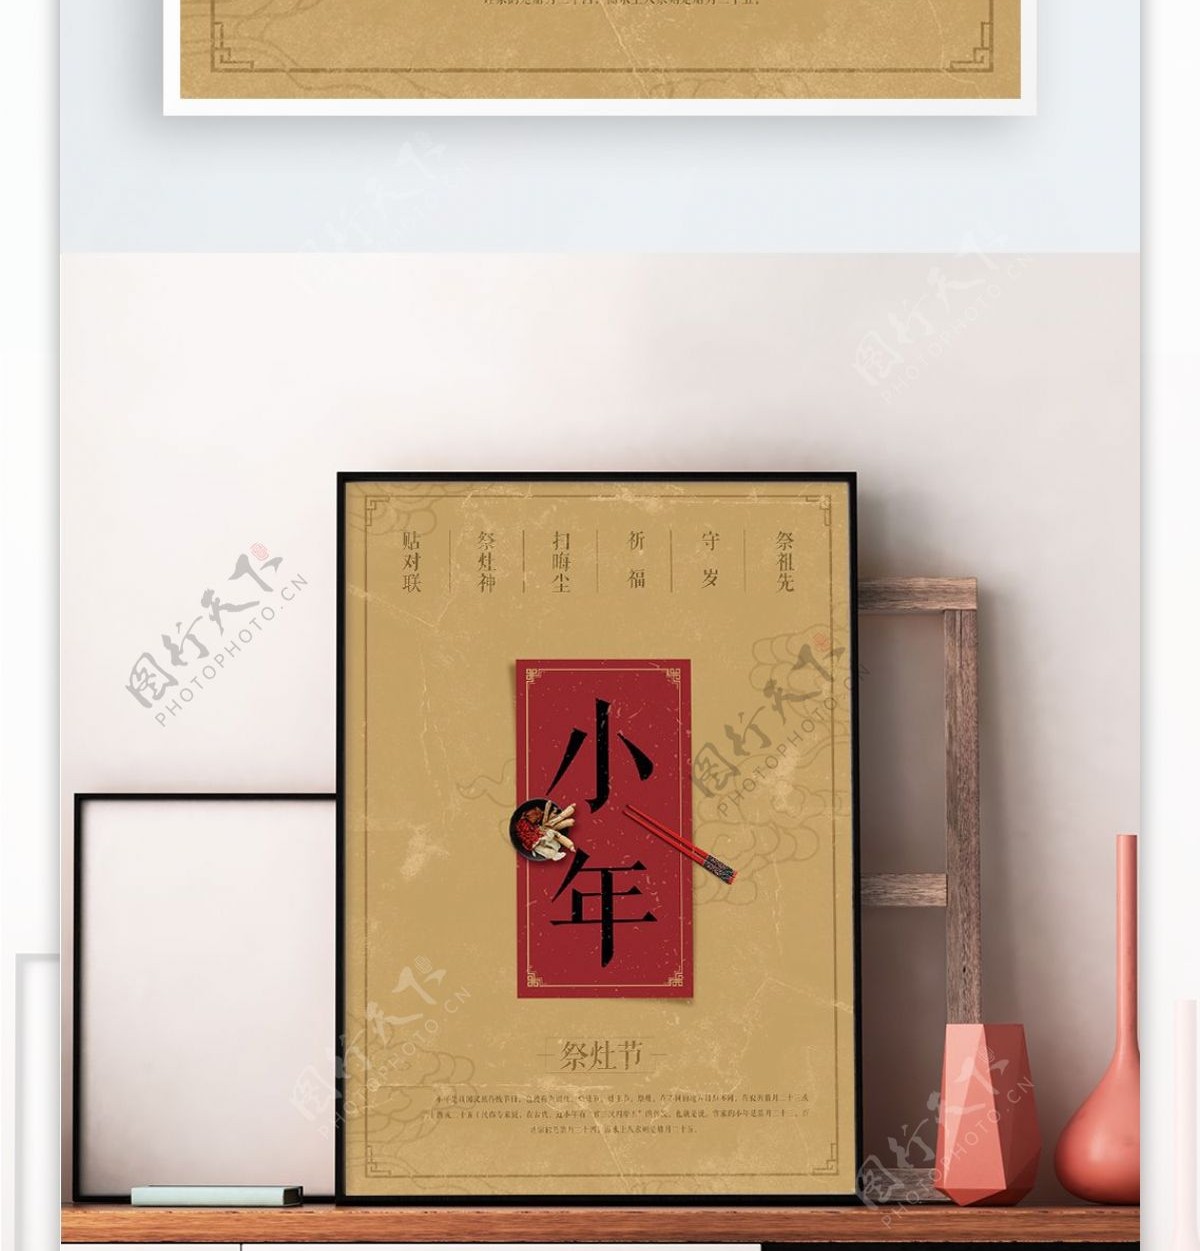 简约姜黄色中国风小年节日海报